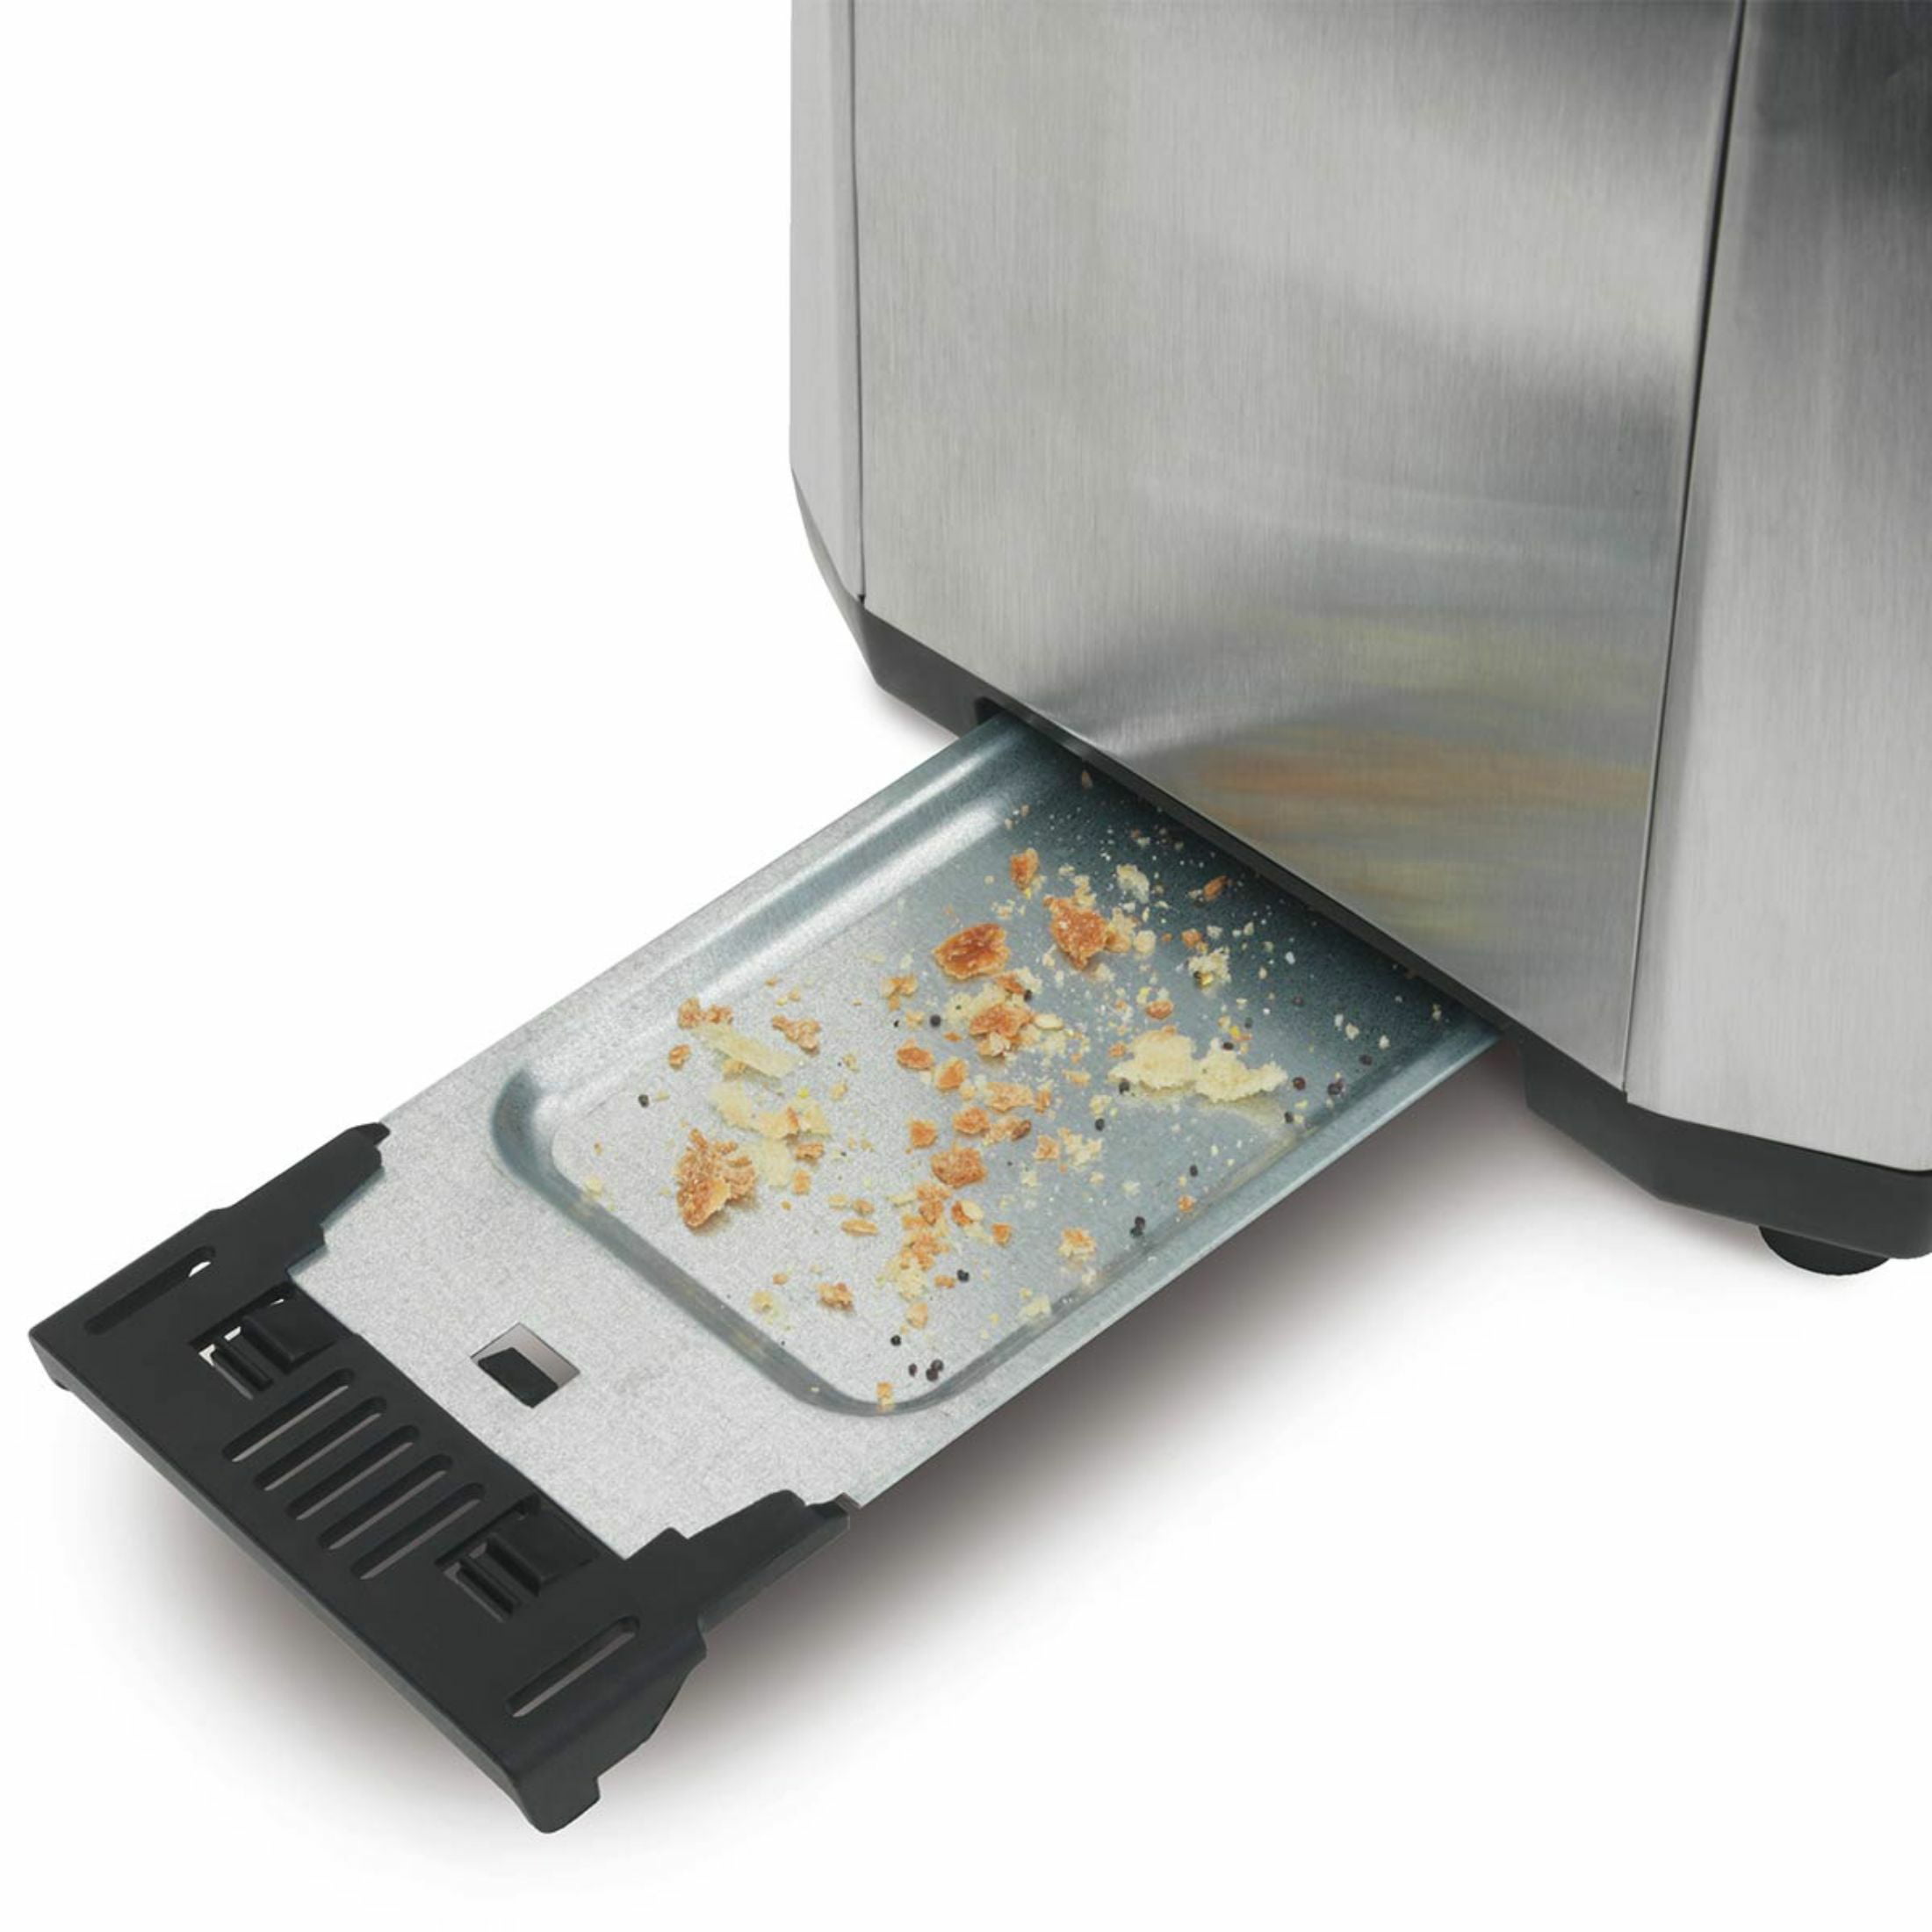 Hamilton Beach® 2 Slice Extra-Wide Slot Toaster